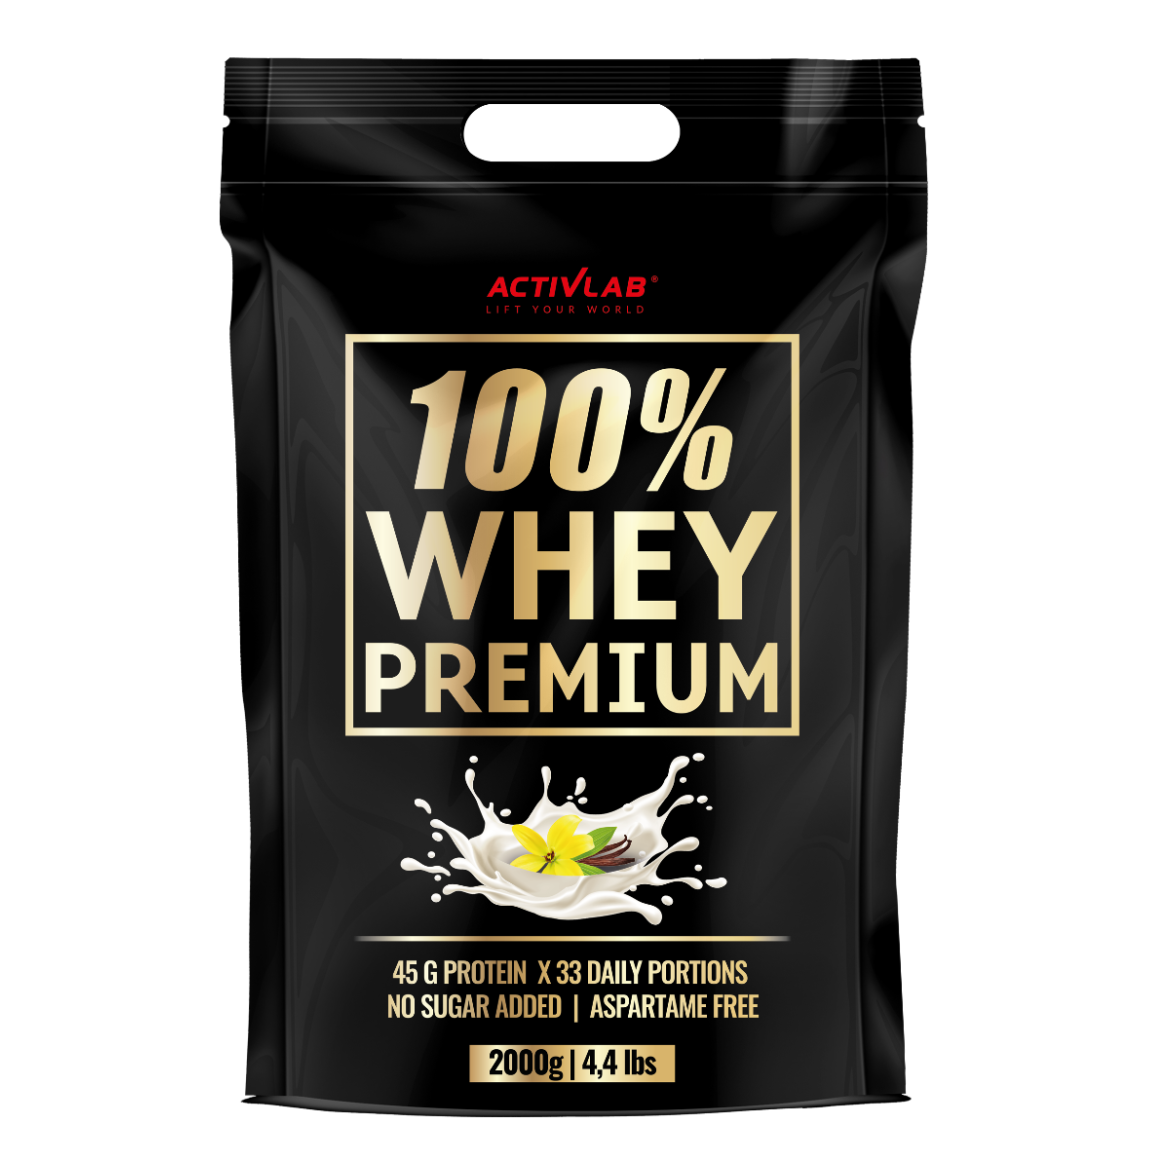 100% Whey Premium - 2 kg